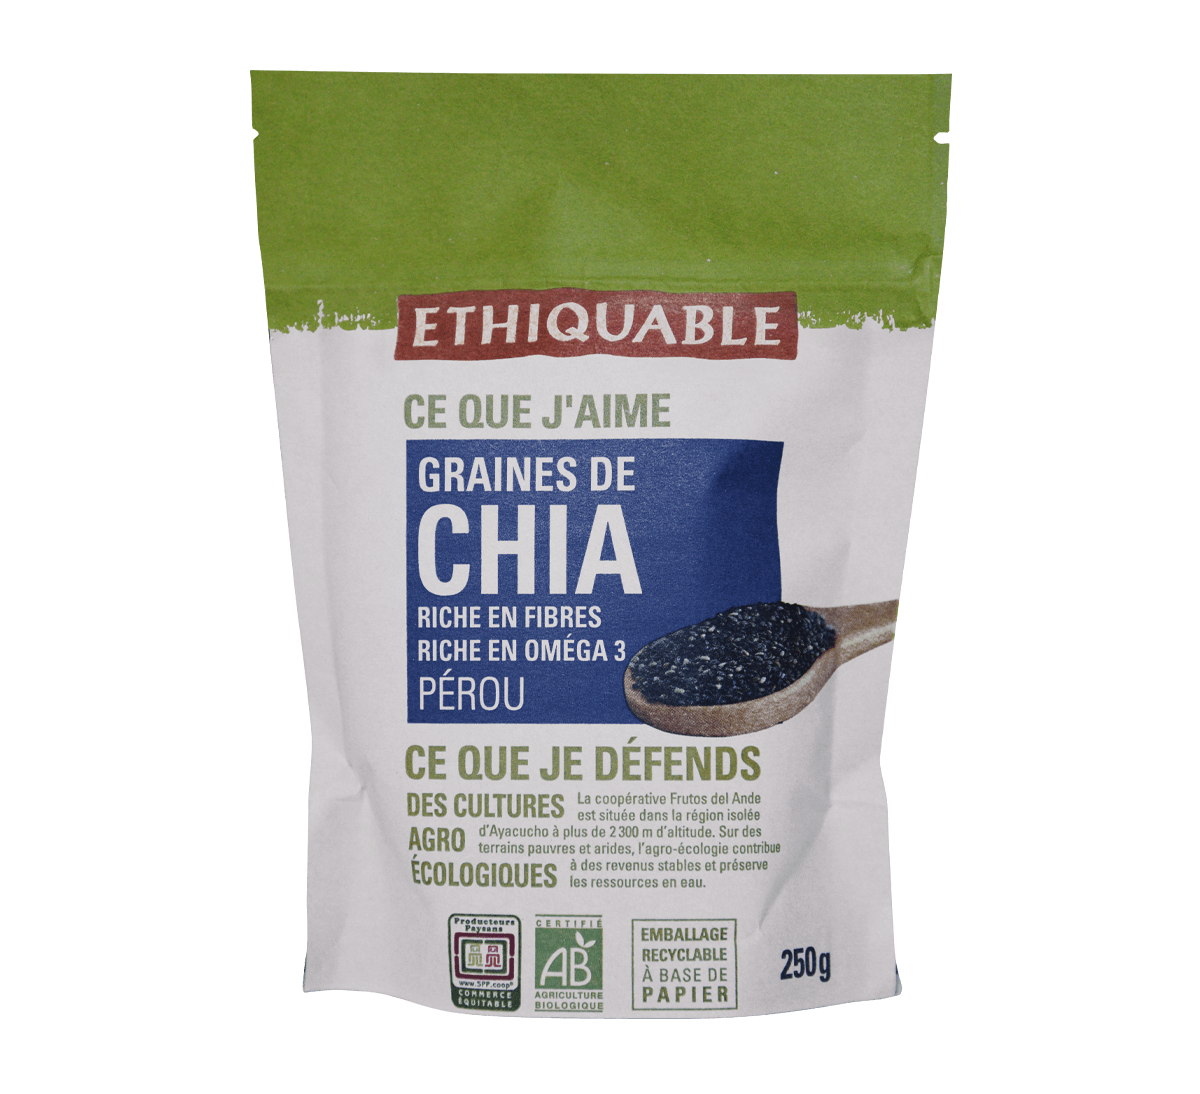 Ethiquable - Graines de chia bio du Pérou issues du Commerce Equitable. Riche en fibres & Oméga 3